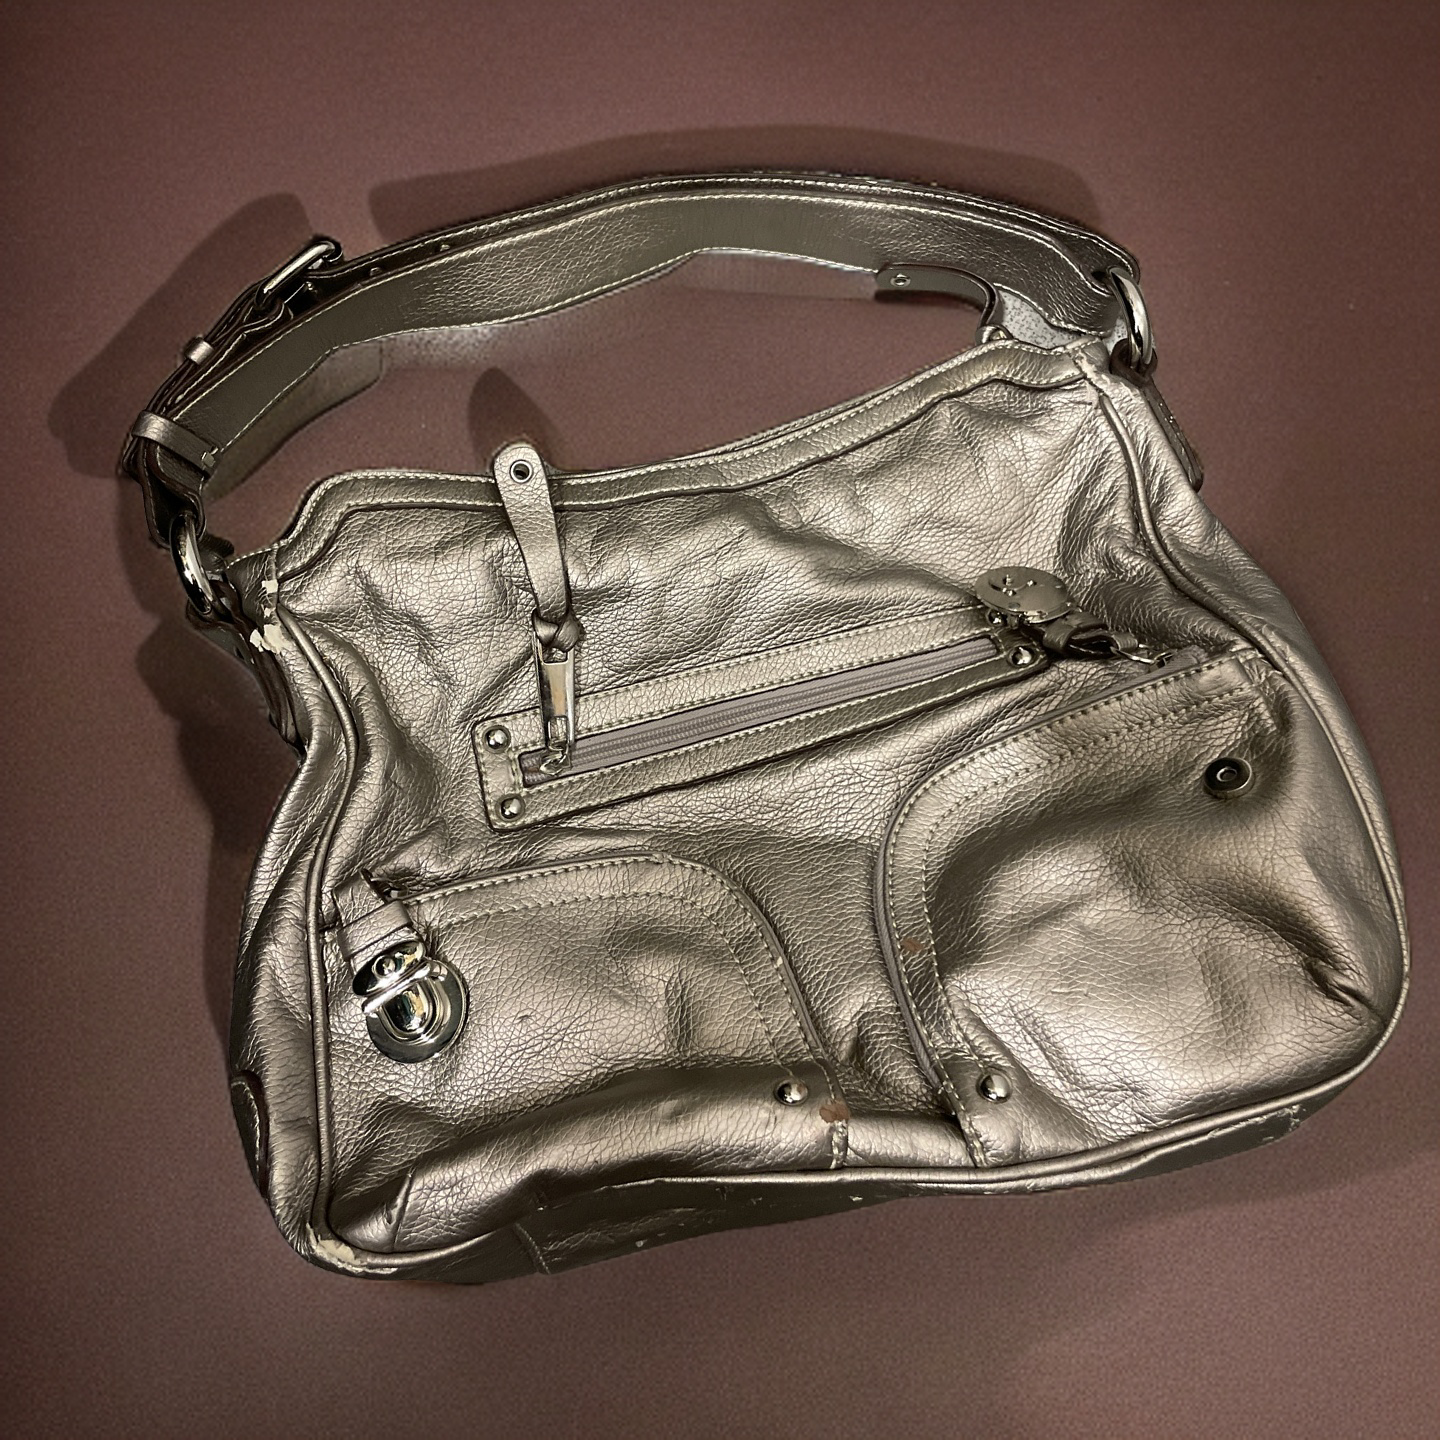  Rubynee Vintage y2k bronze leather women hand bag